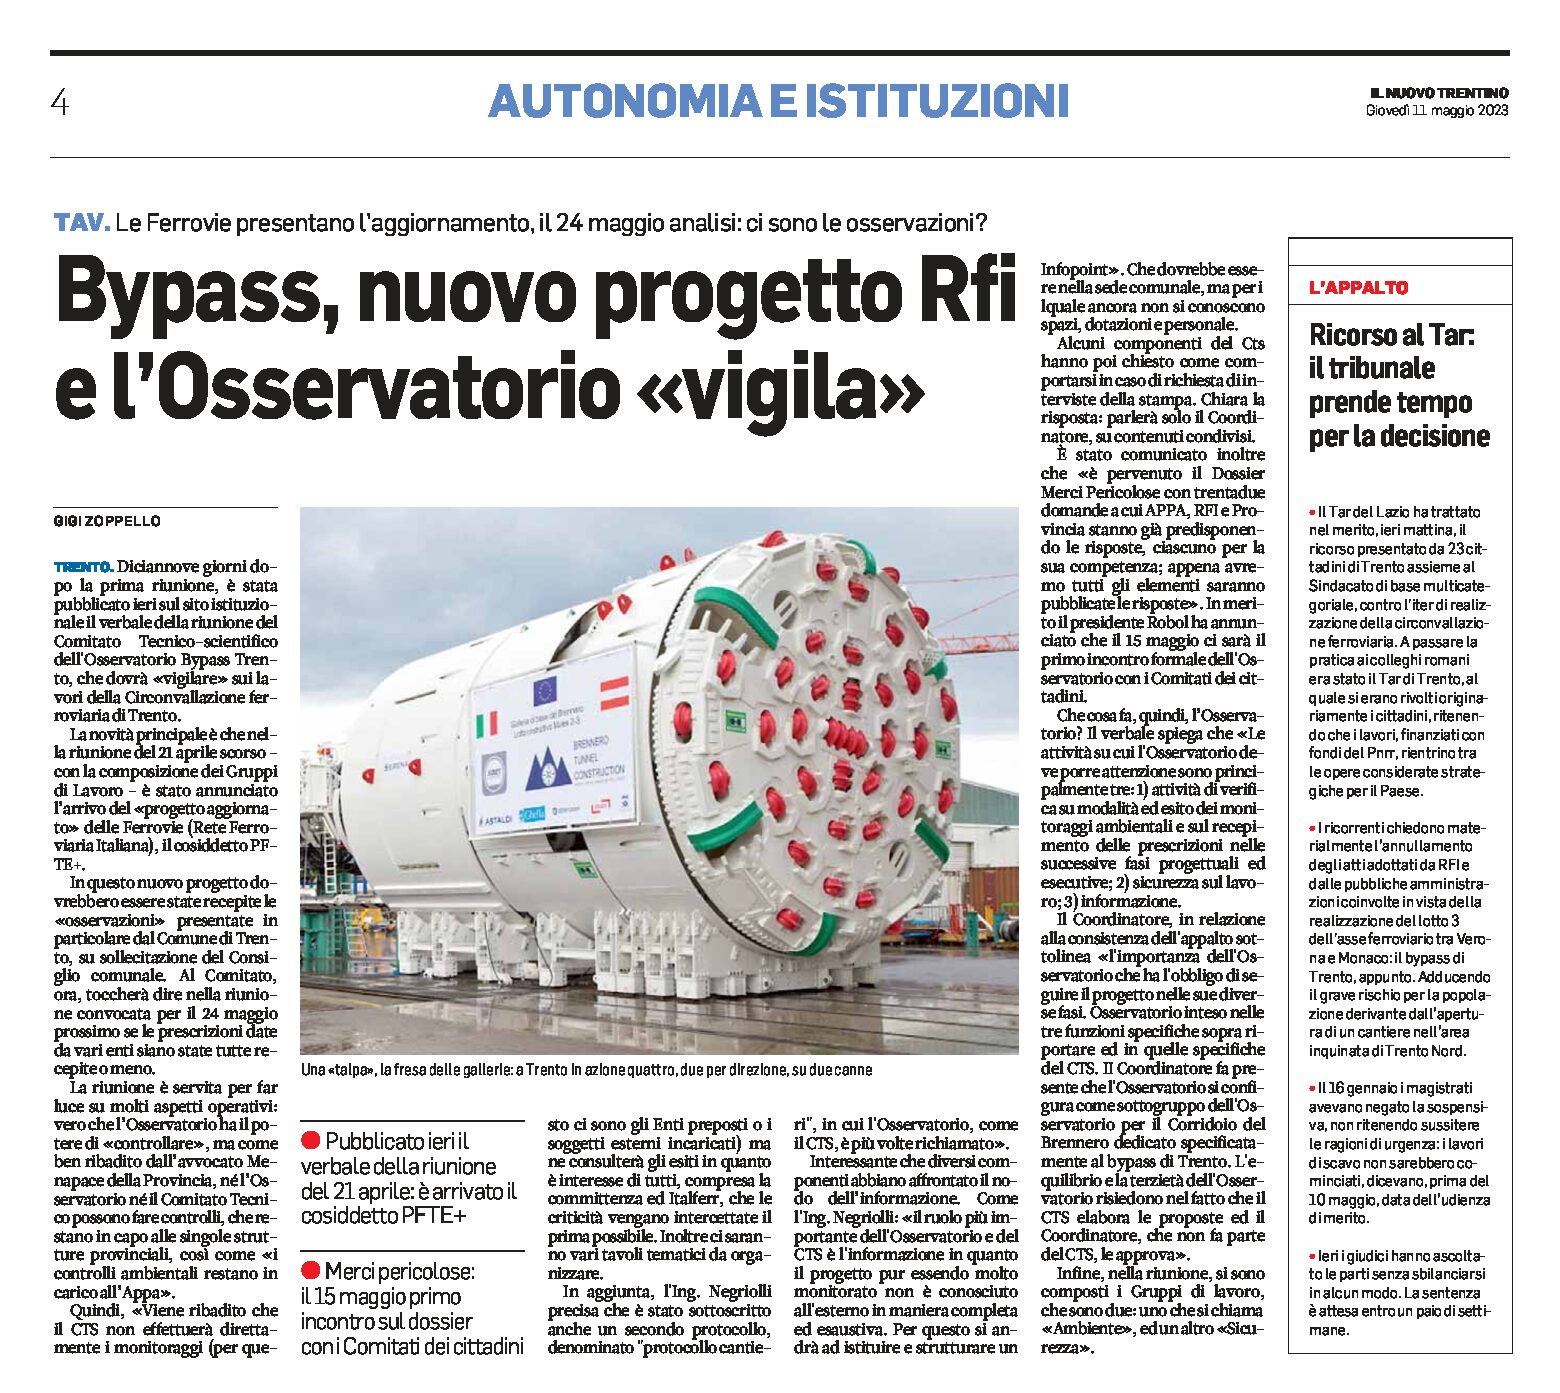 Trento, bypass: nuovo progetto Rfi e l’Osservatorio “vigila”